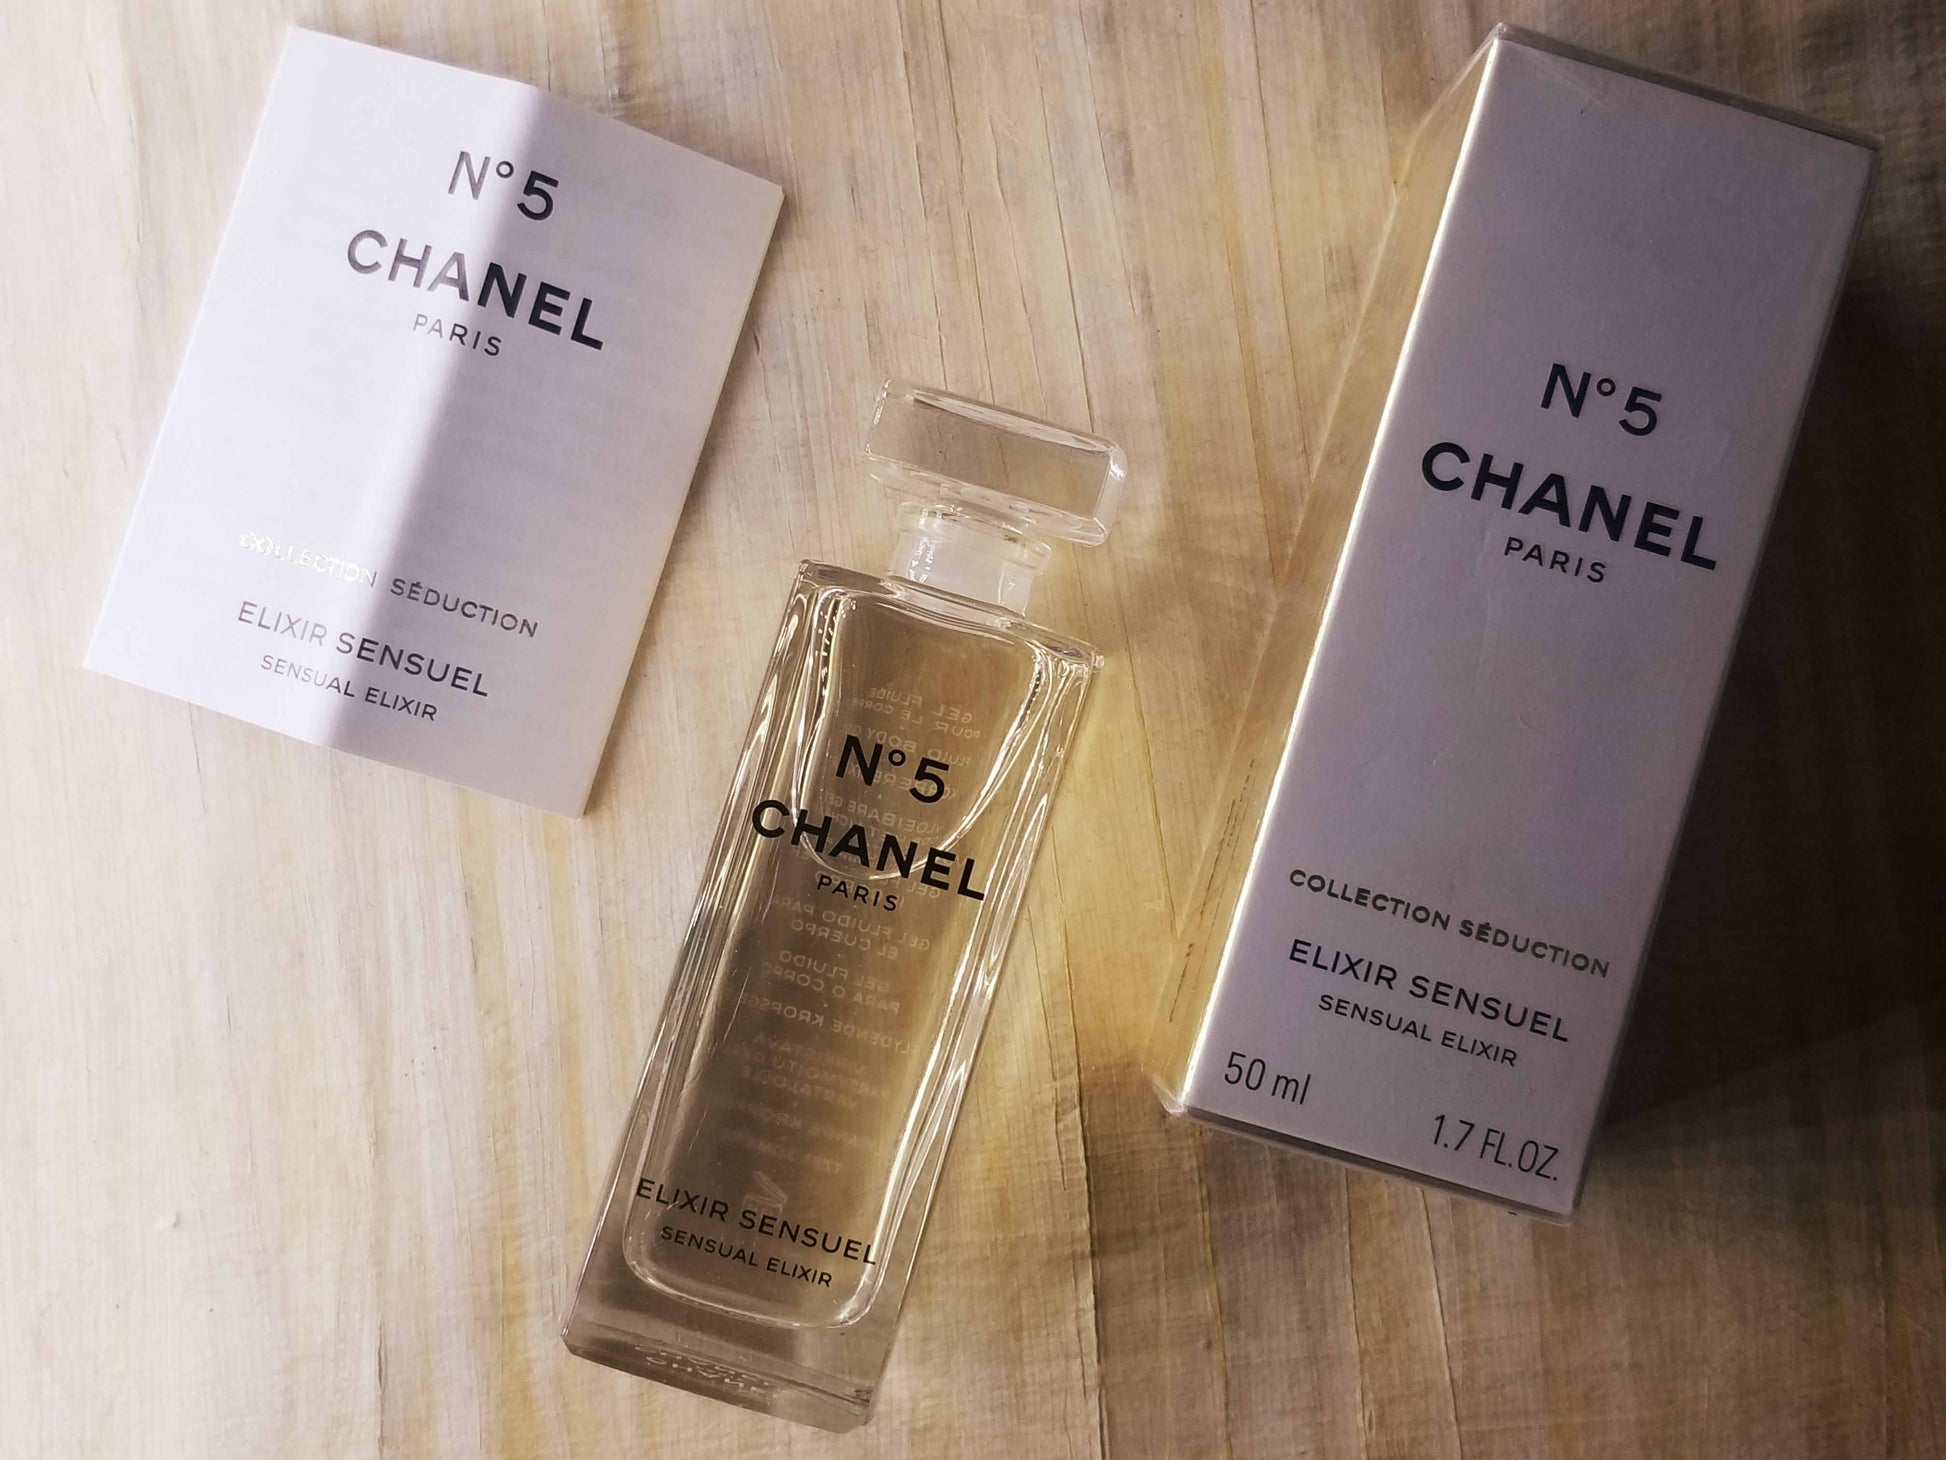 Chanel No 5 Elixir Sensual 1.7 fl. oz. Bottle